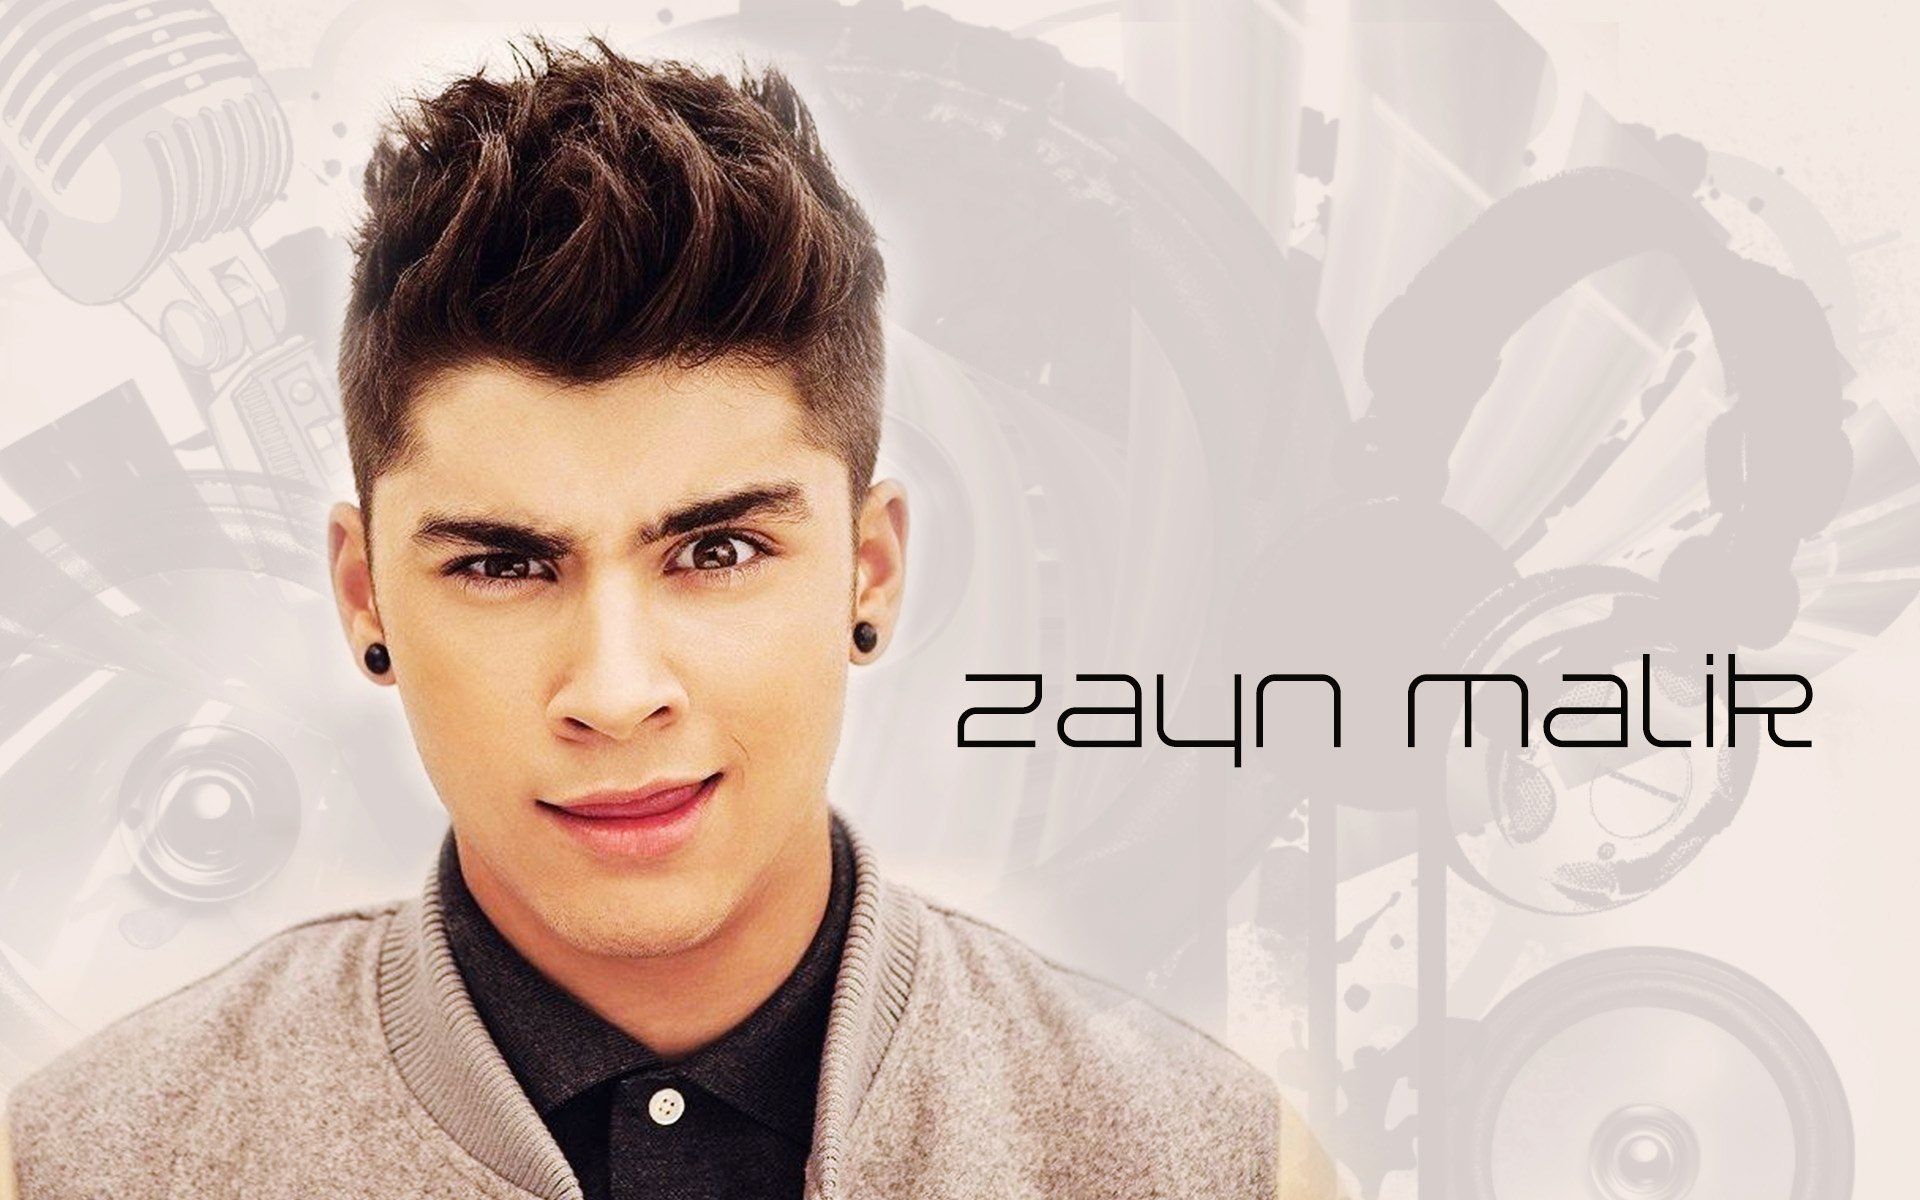 Zayn-Malik-One-Direction-Member-Wallpaper.jpg